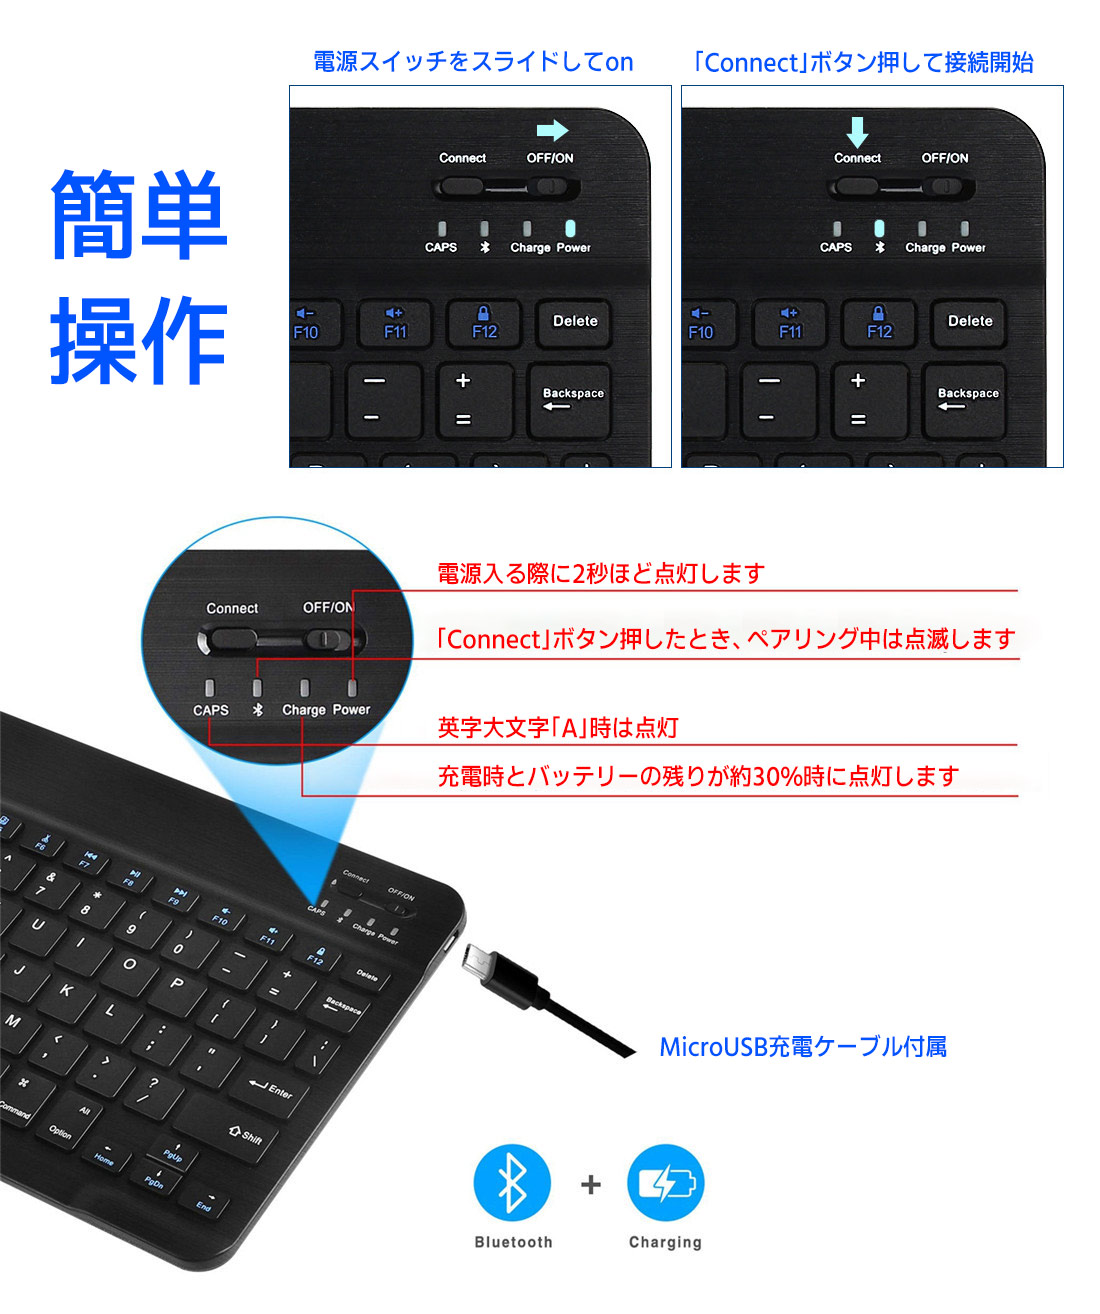 楽天市場 Ipadキーボード Bluetoothキーボード 日本語入力に特化した ワイヤレス キーボード Ipad用キーボード スリム 軽量 薄型 スタンド付 Iphone 持ち運び コンパクト あす楽 マウス ブルートゥース Ipad 用キーボード Ios Windows Android 充電式 キーボード マルチ